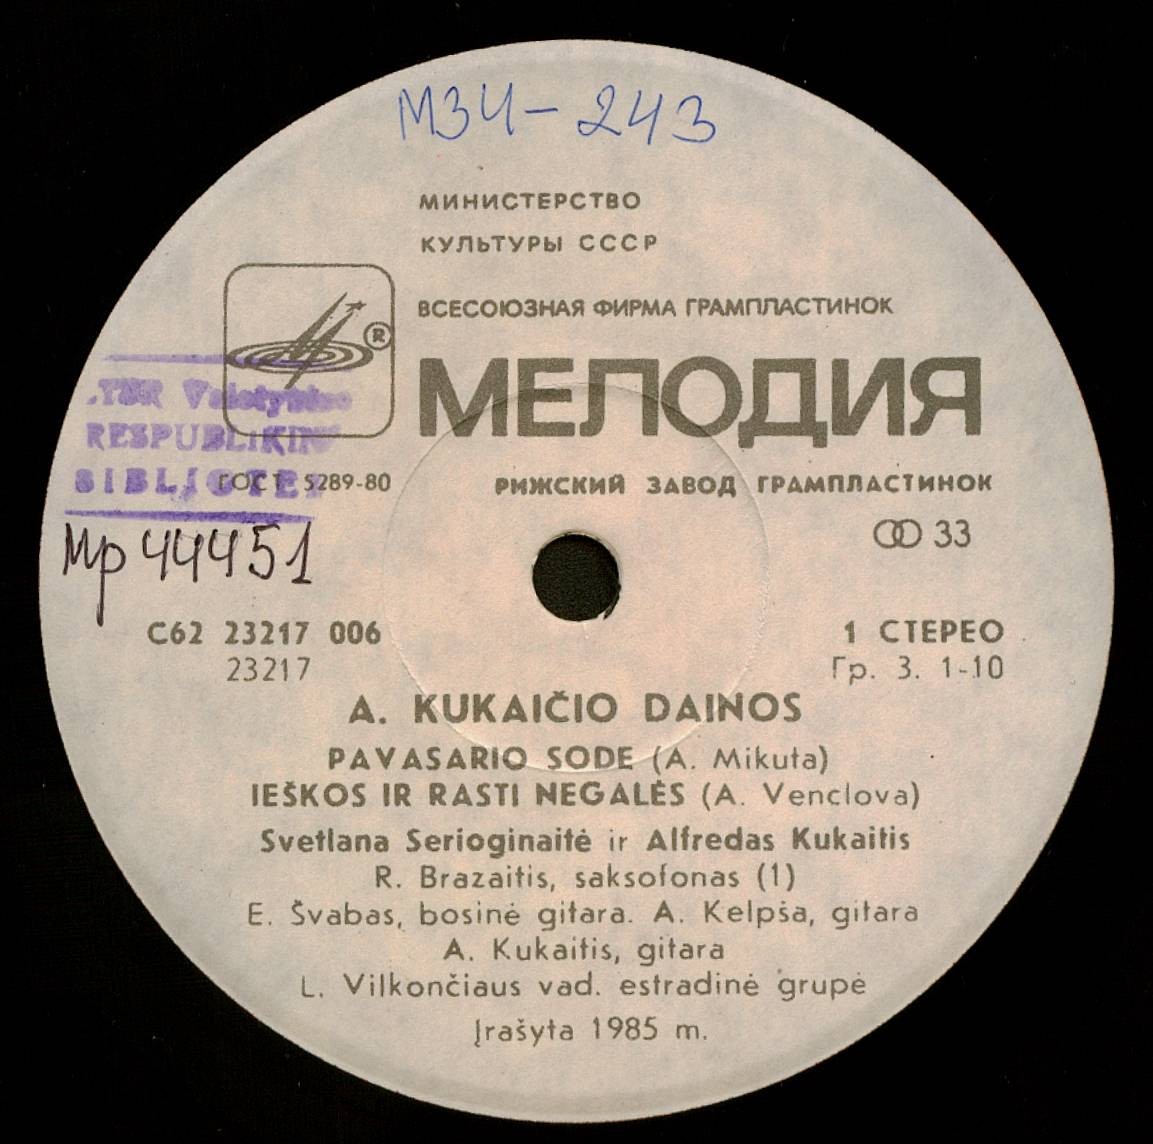 Песни А. КУКАЙТИСА (1956)